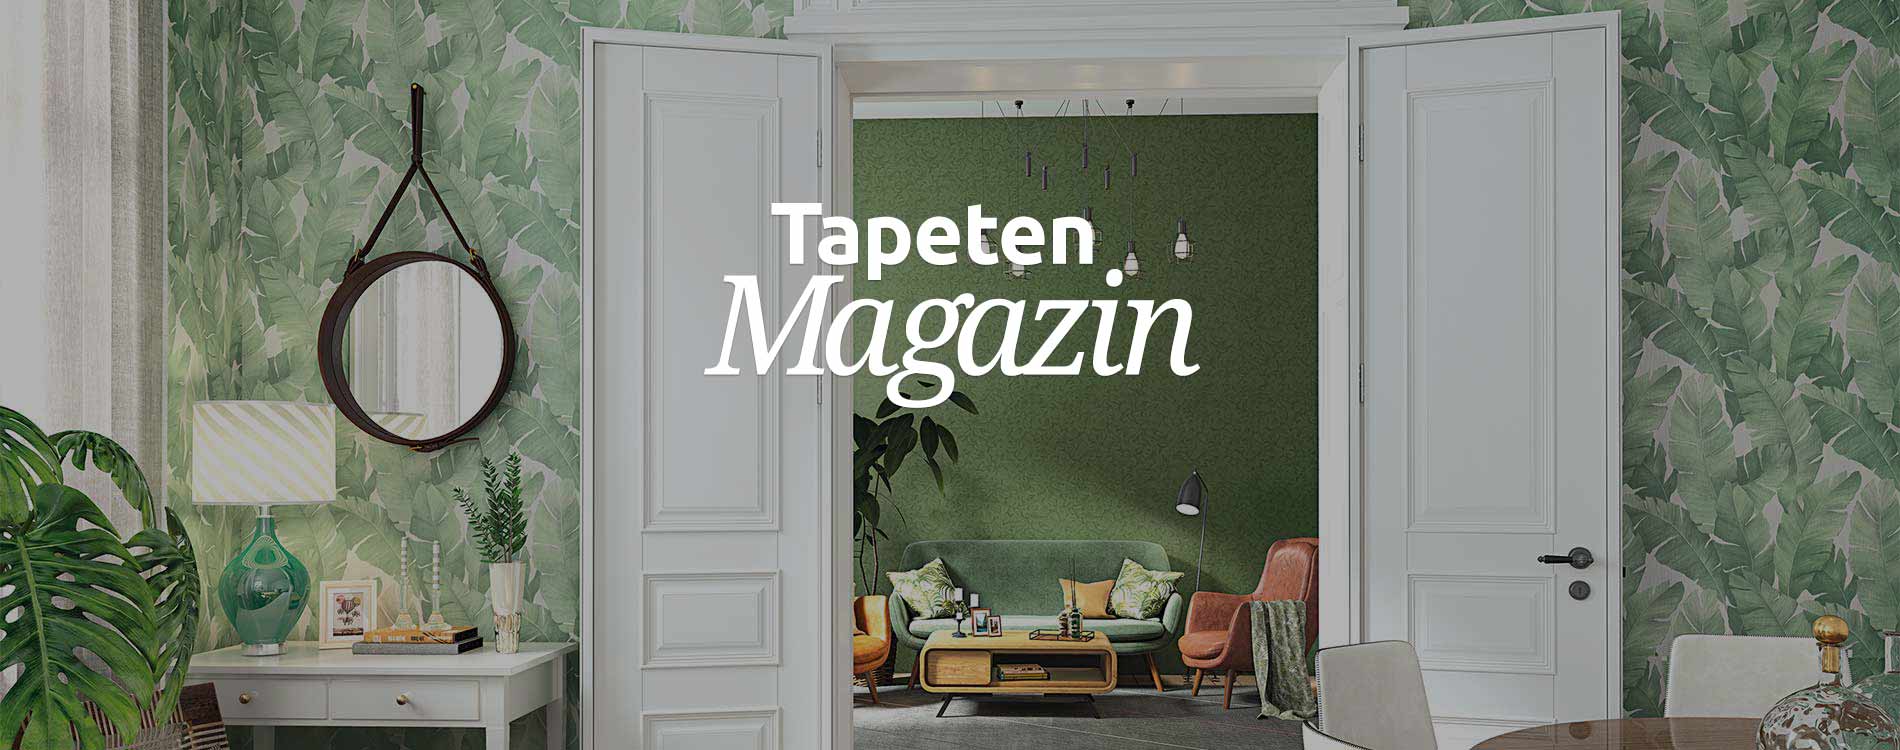 Das Tapeten Magazin Des Deutschen Tapeten Instituts Tapeten Magazin